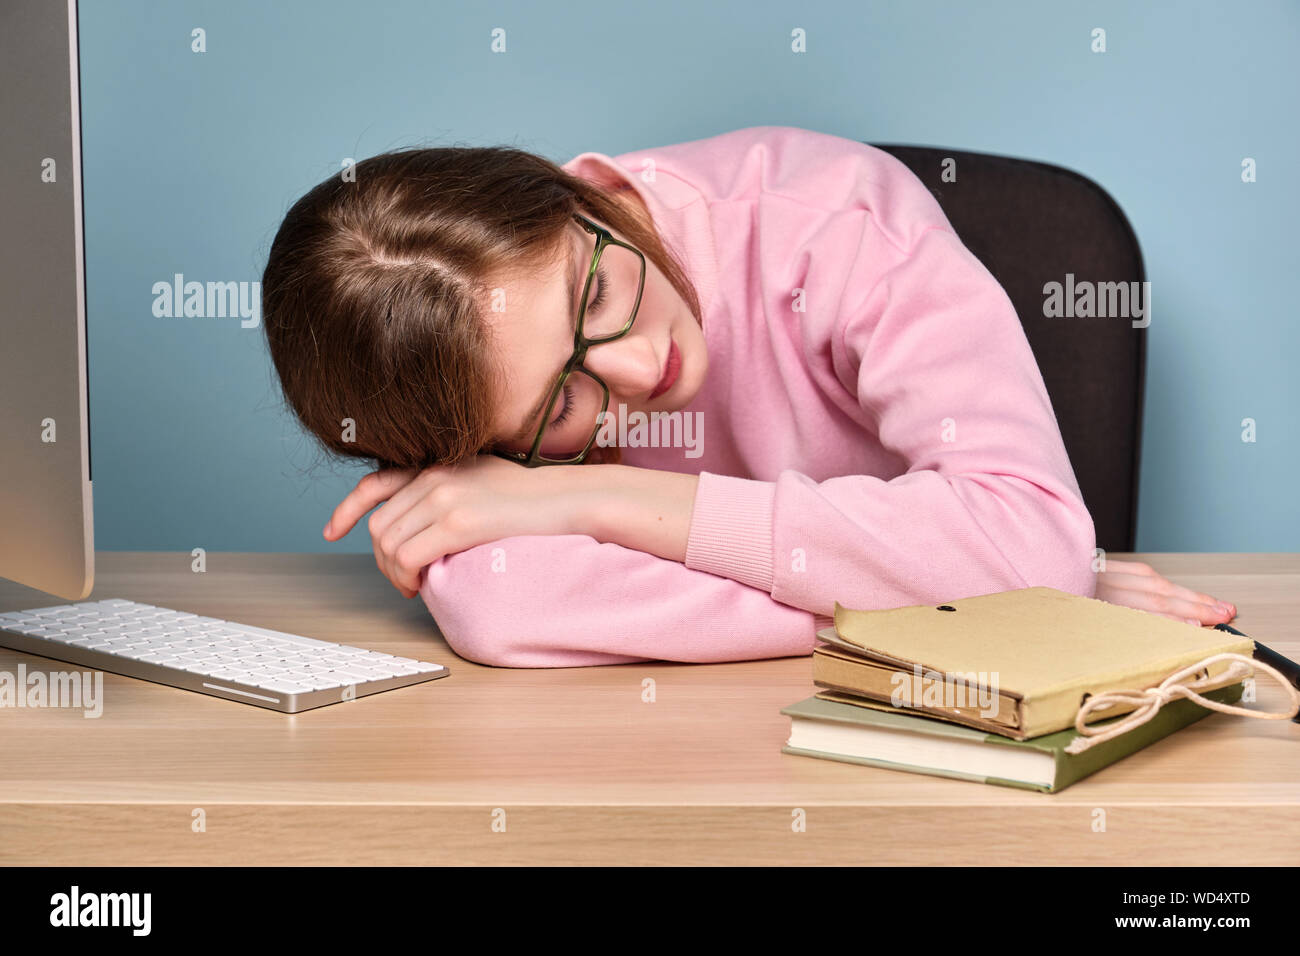 Une fille dans un chandail rose est assis à une table avec un ordinateur et des livres avec sa tête reposant sur les mains. Banque D'Images